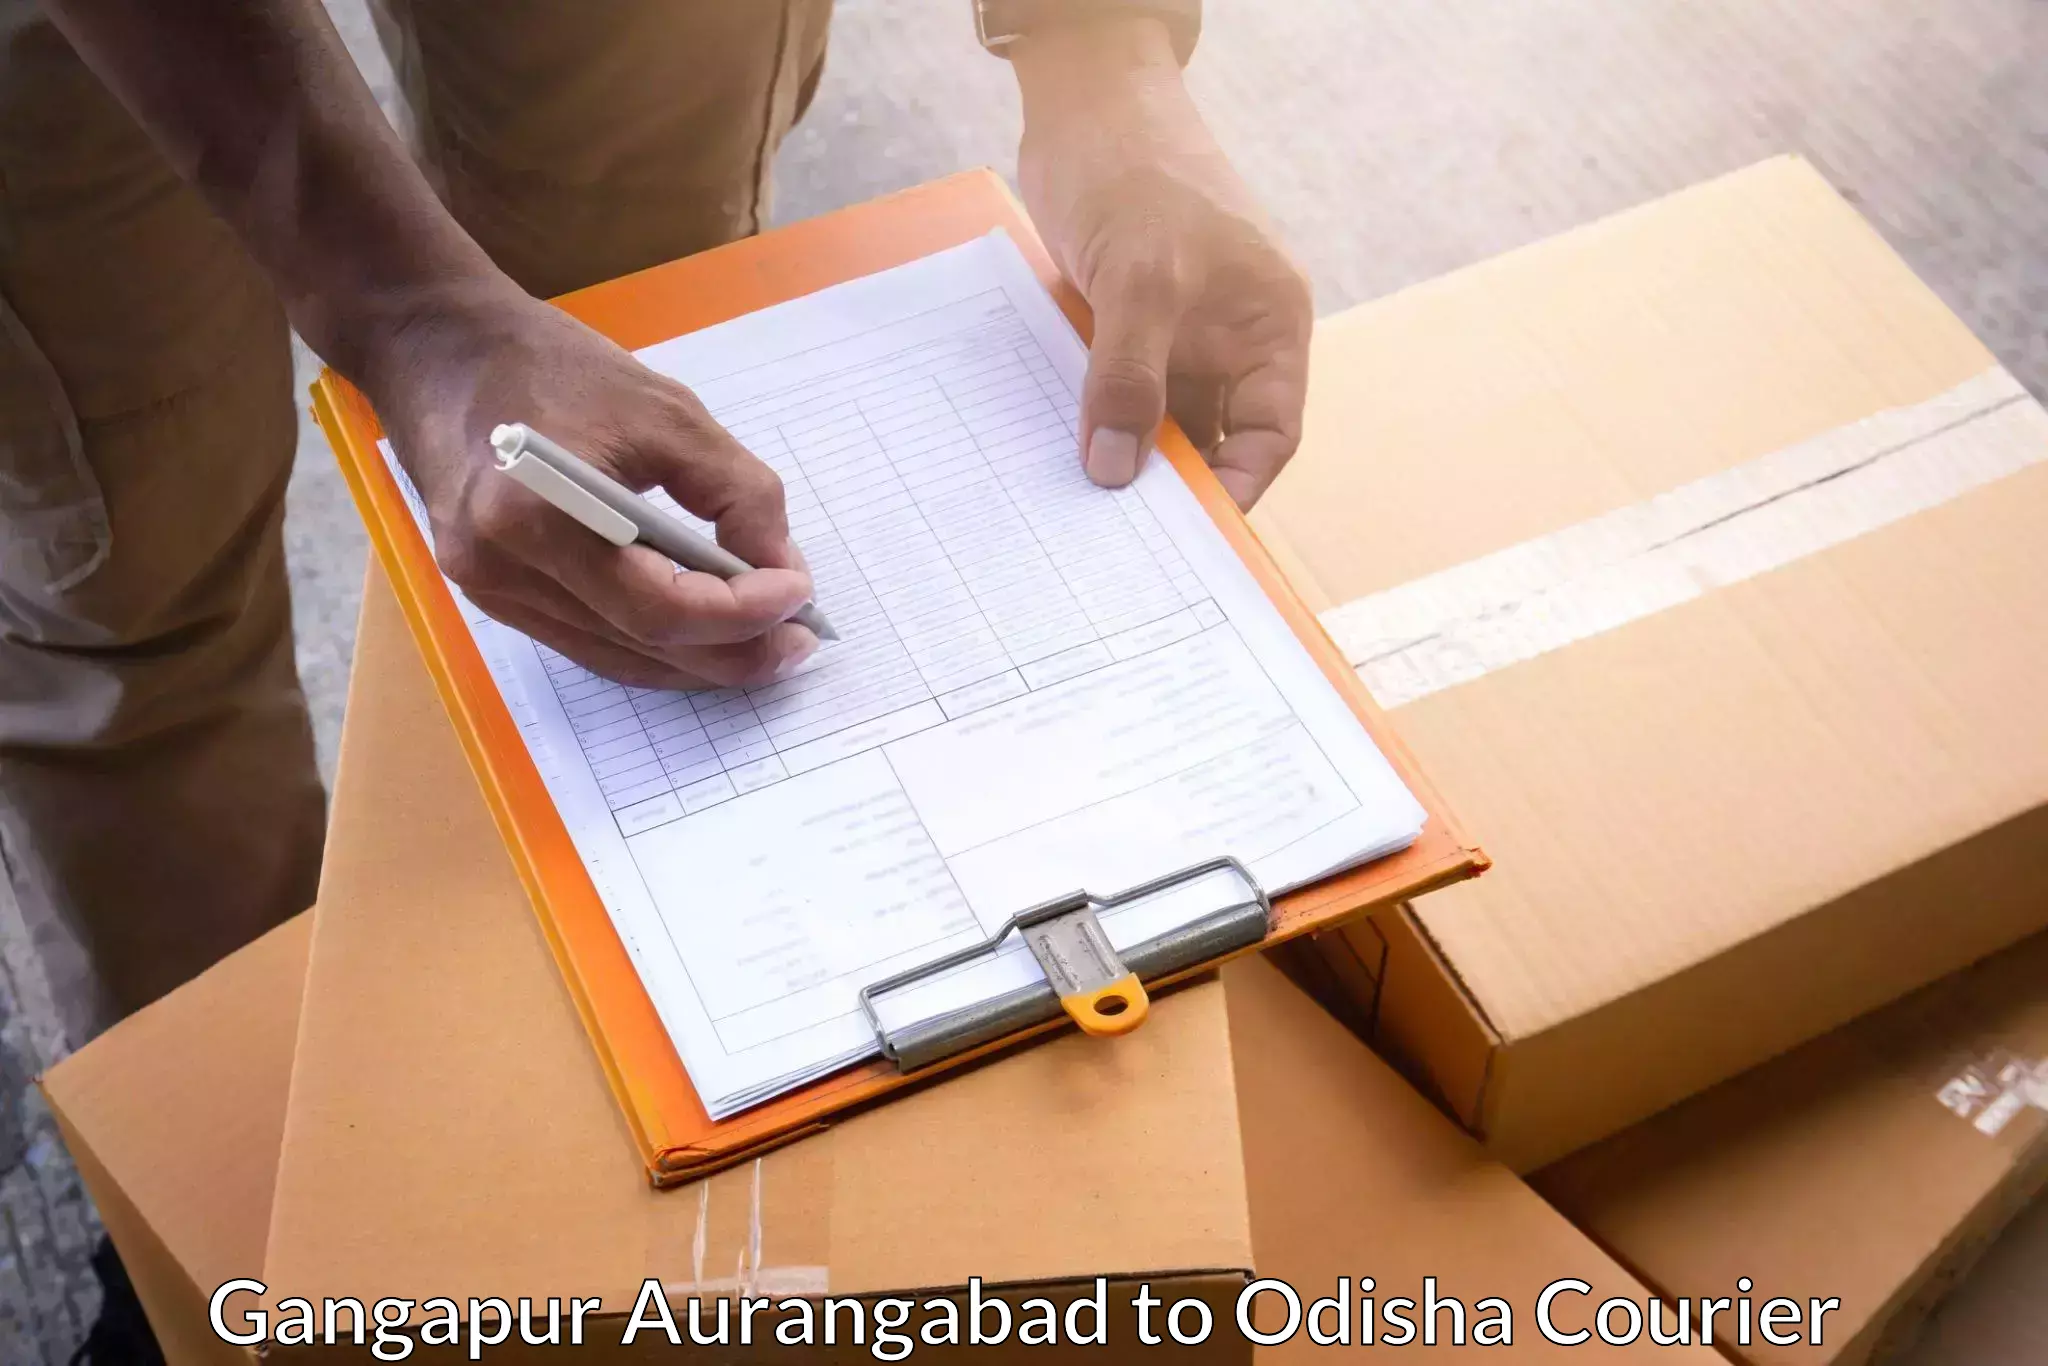 Efficient parcel service Gangapur Aurangabad to Gajapati